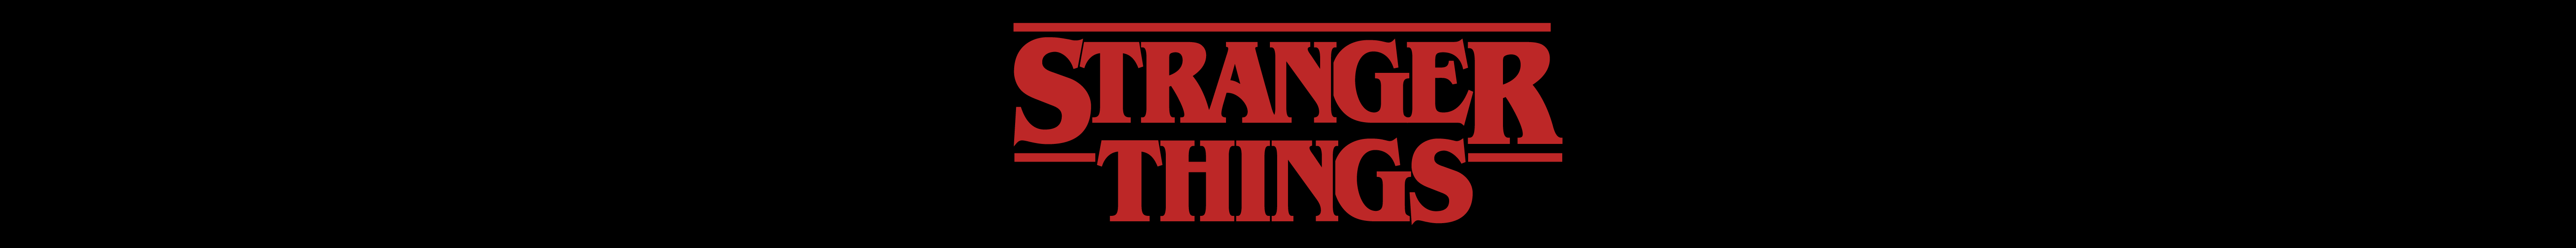 Stranger Things - Banner